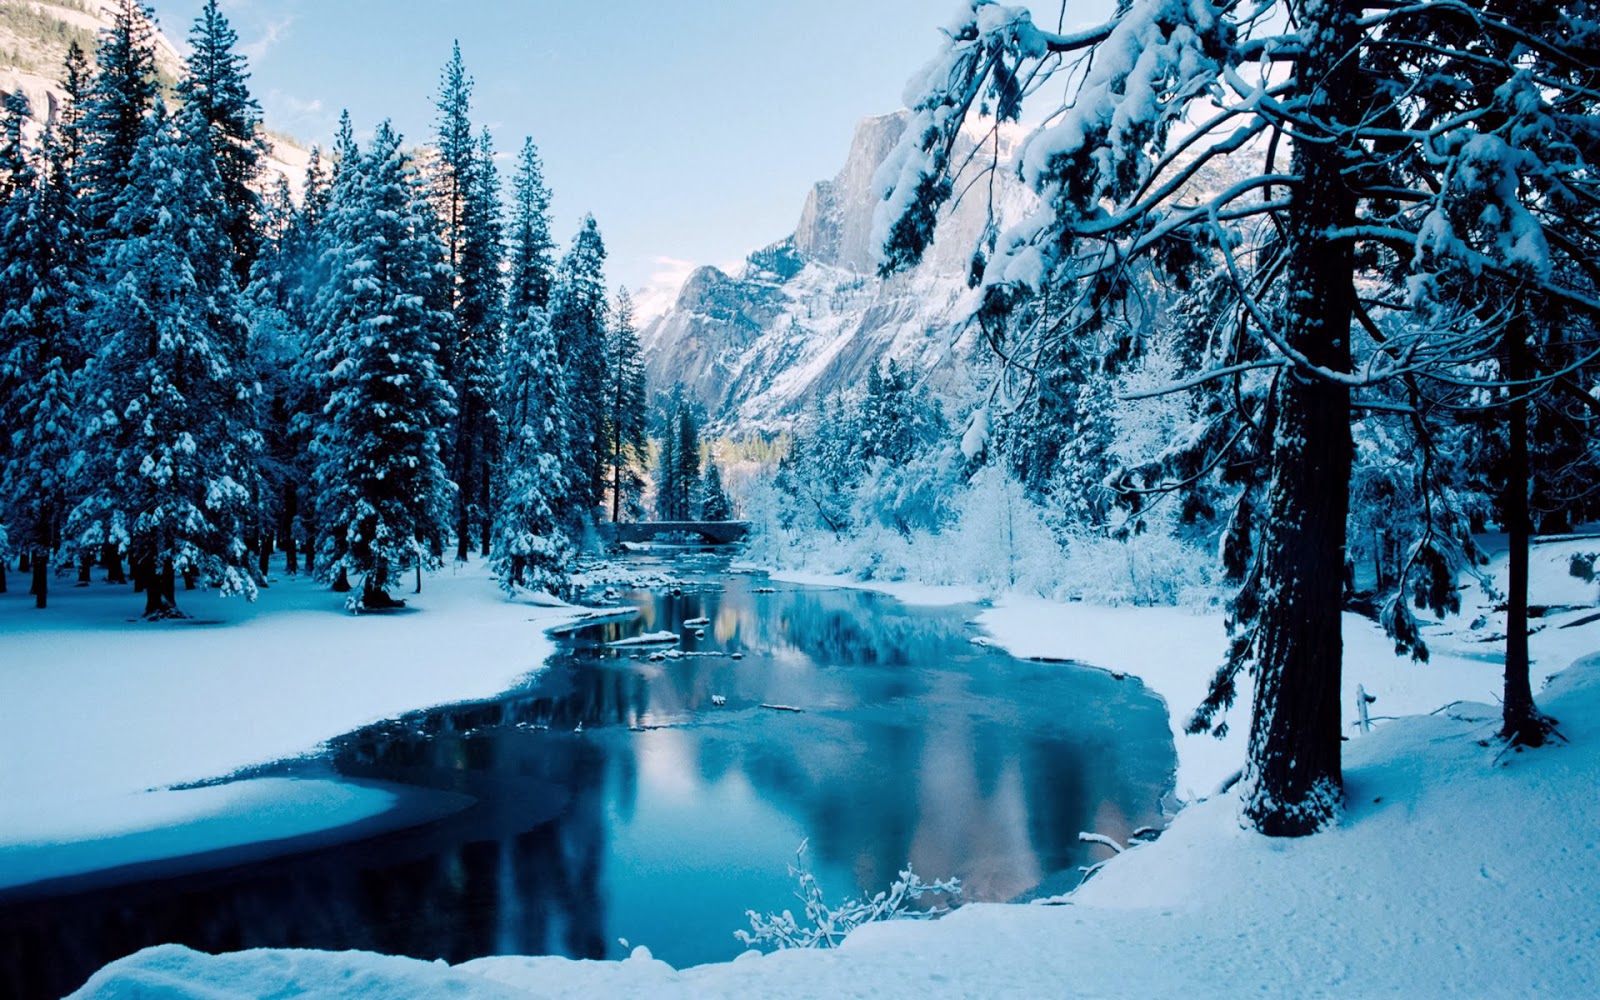 Desktop Backgrounds 4U Winter Scenes